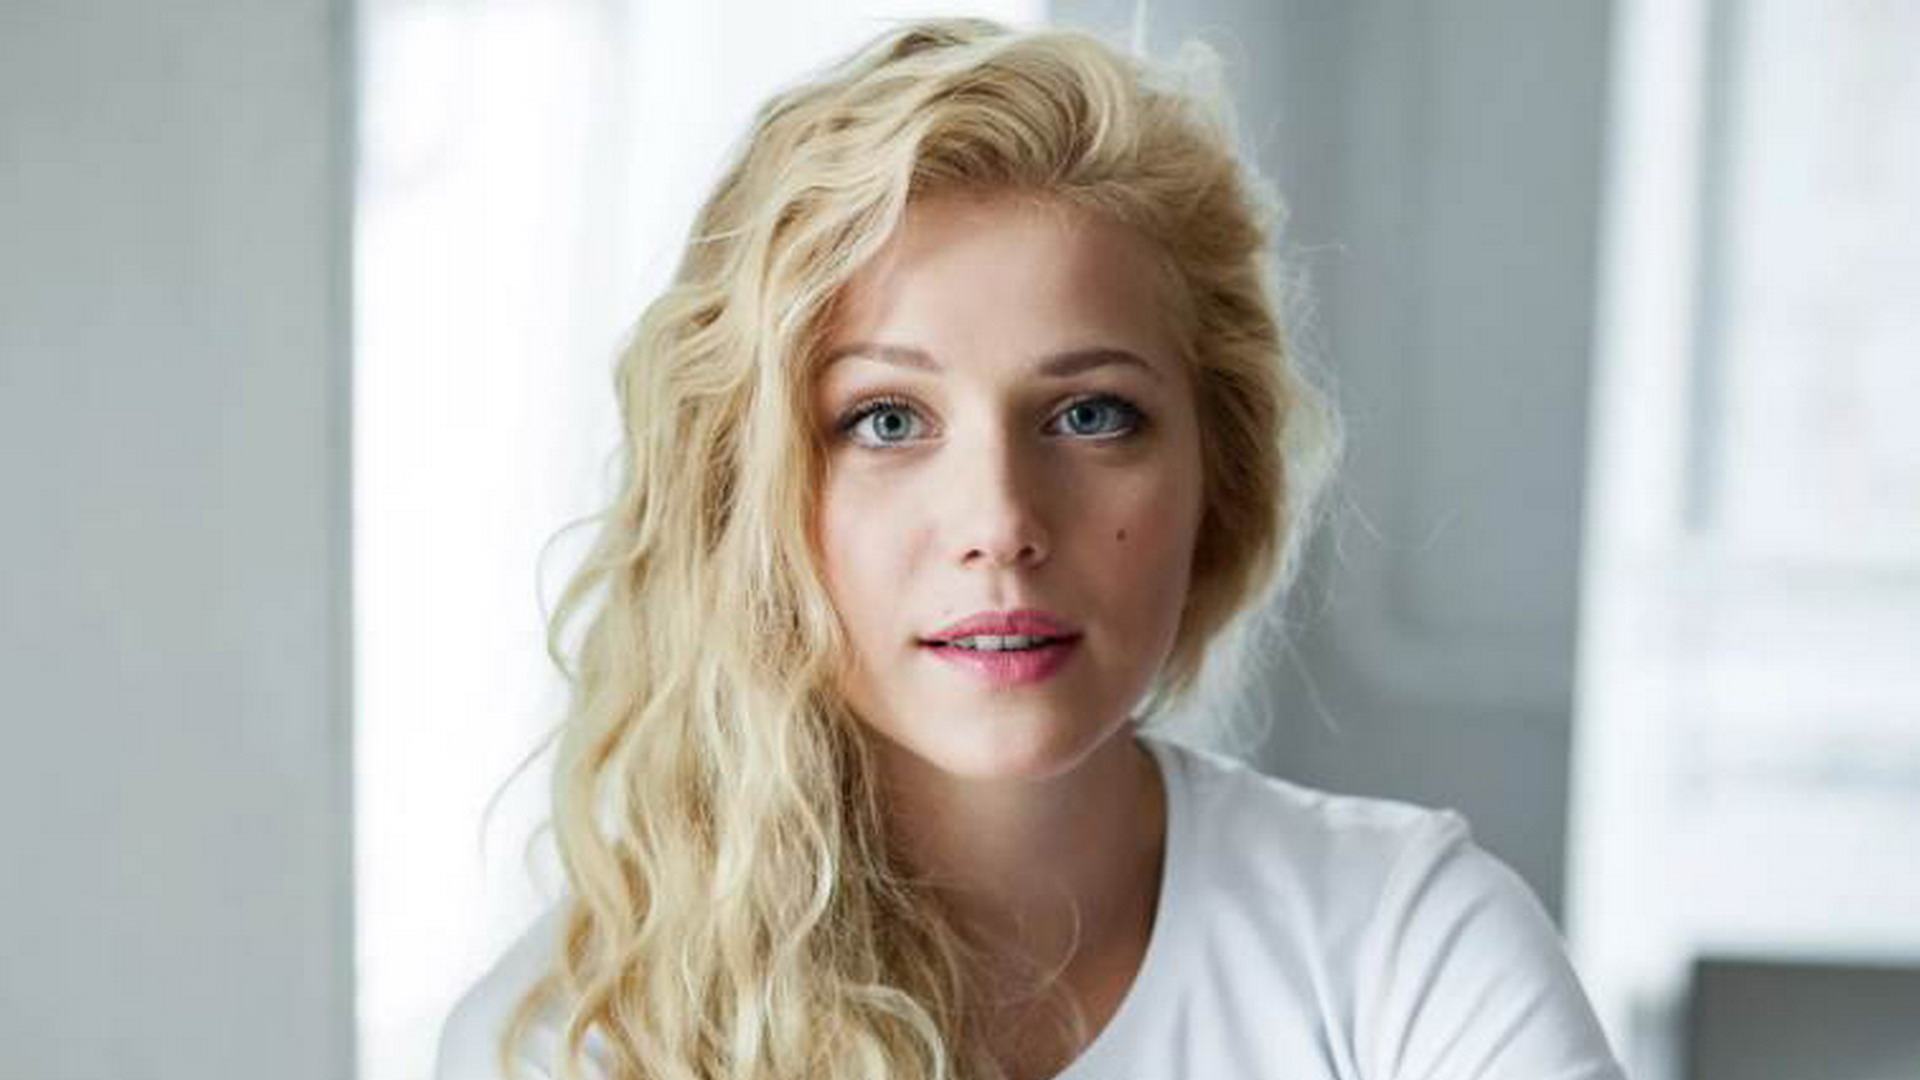 Молодые актрисы россии фото блондинки